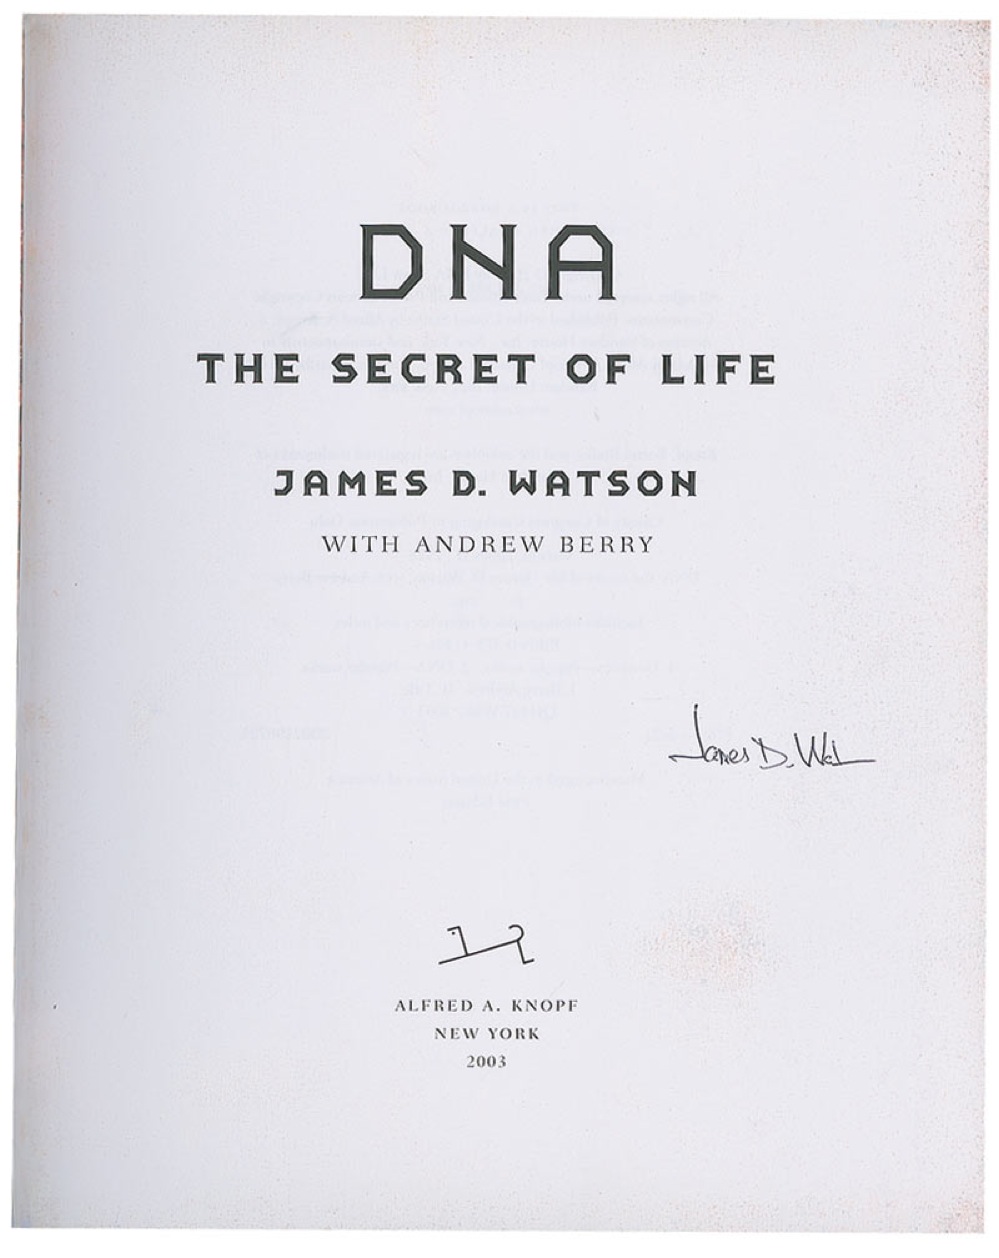 Lot #209 DNA: James D. Watson